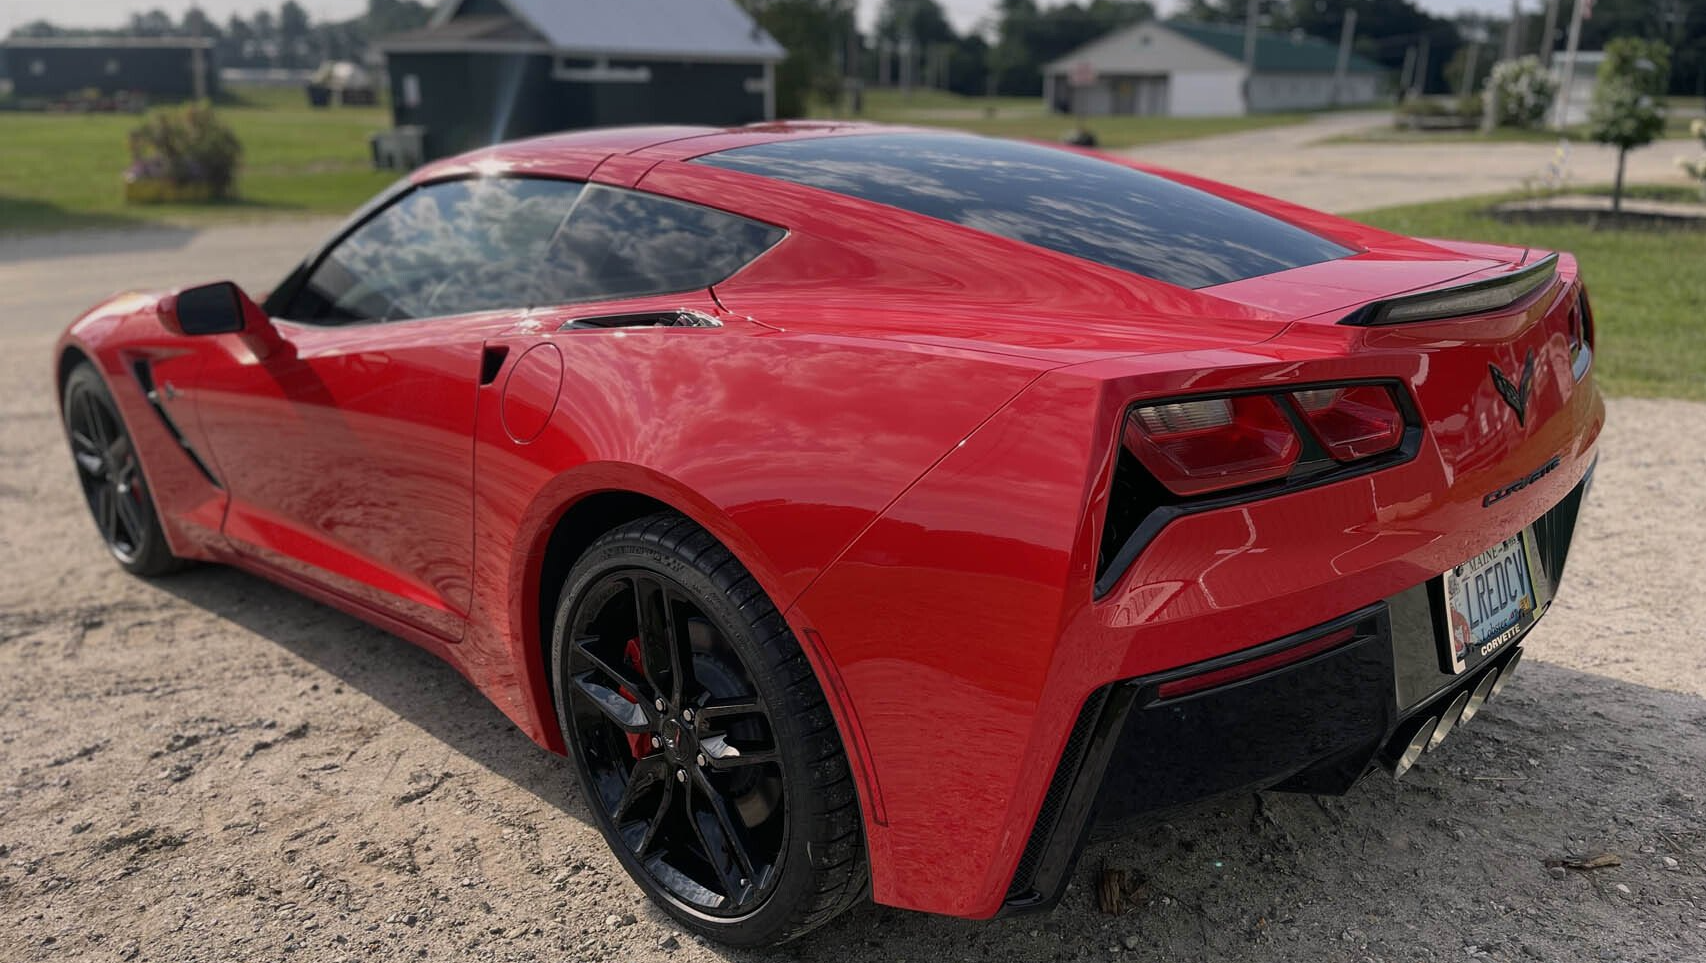 Ceramic coated red Corvette